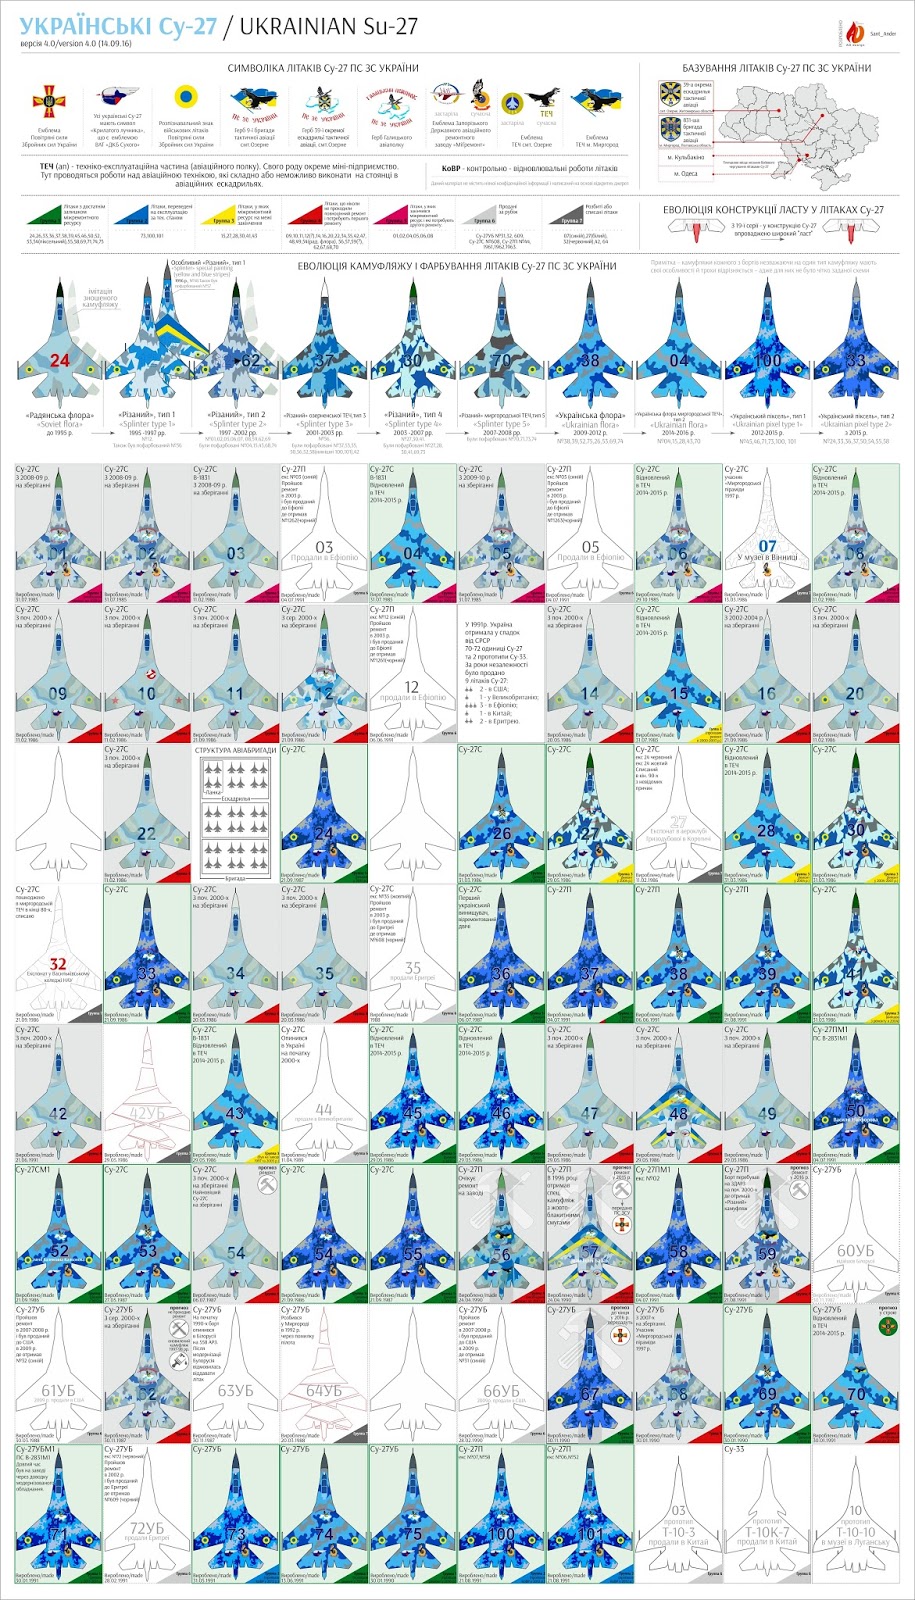 всі українські Су-27